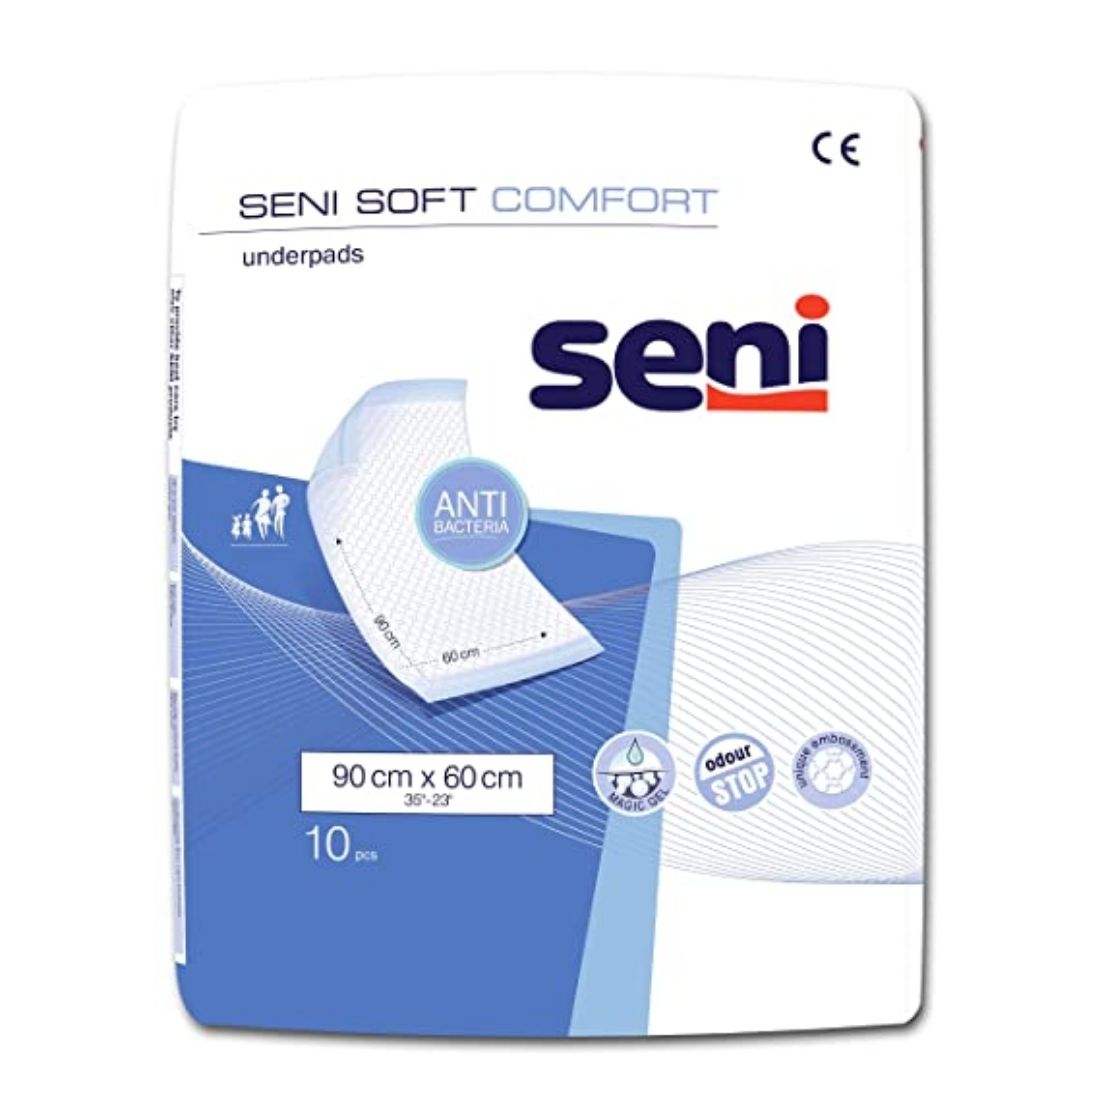 Seni Soft Comfort Underpads - 10 Pieces (90 x 60 cm)